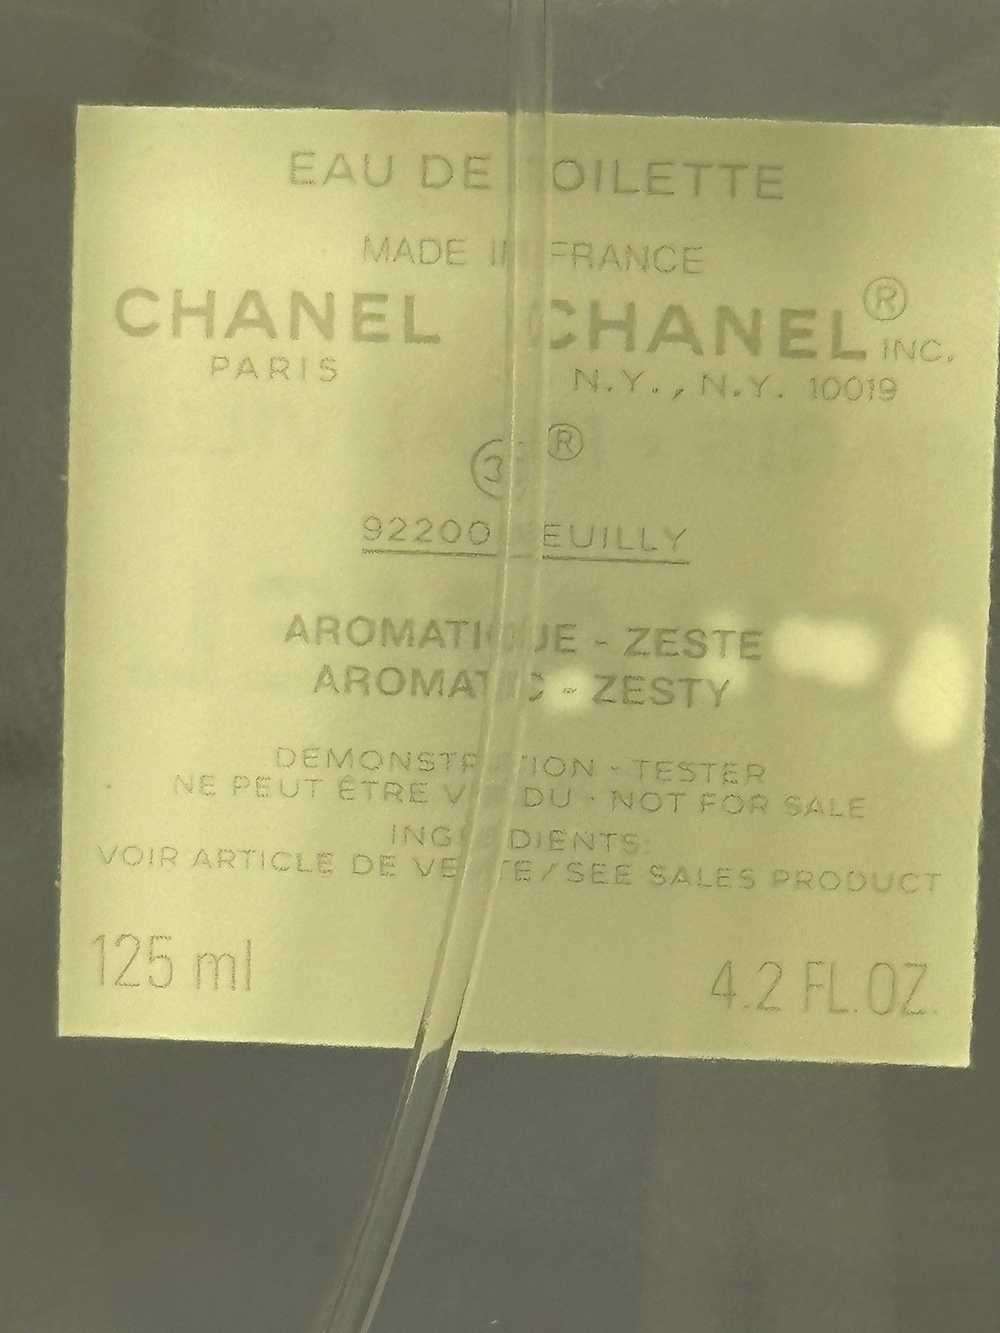 Chanel CHANEL PARIS DEAUVILLE 4.2FLOZ - image 7